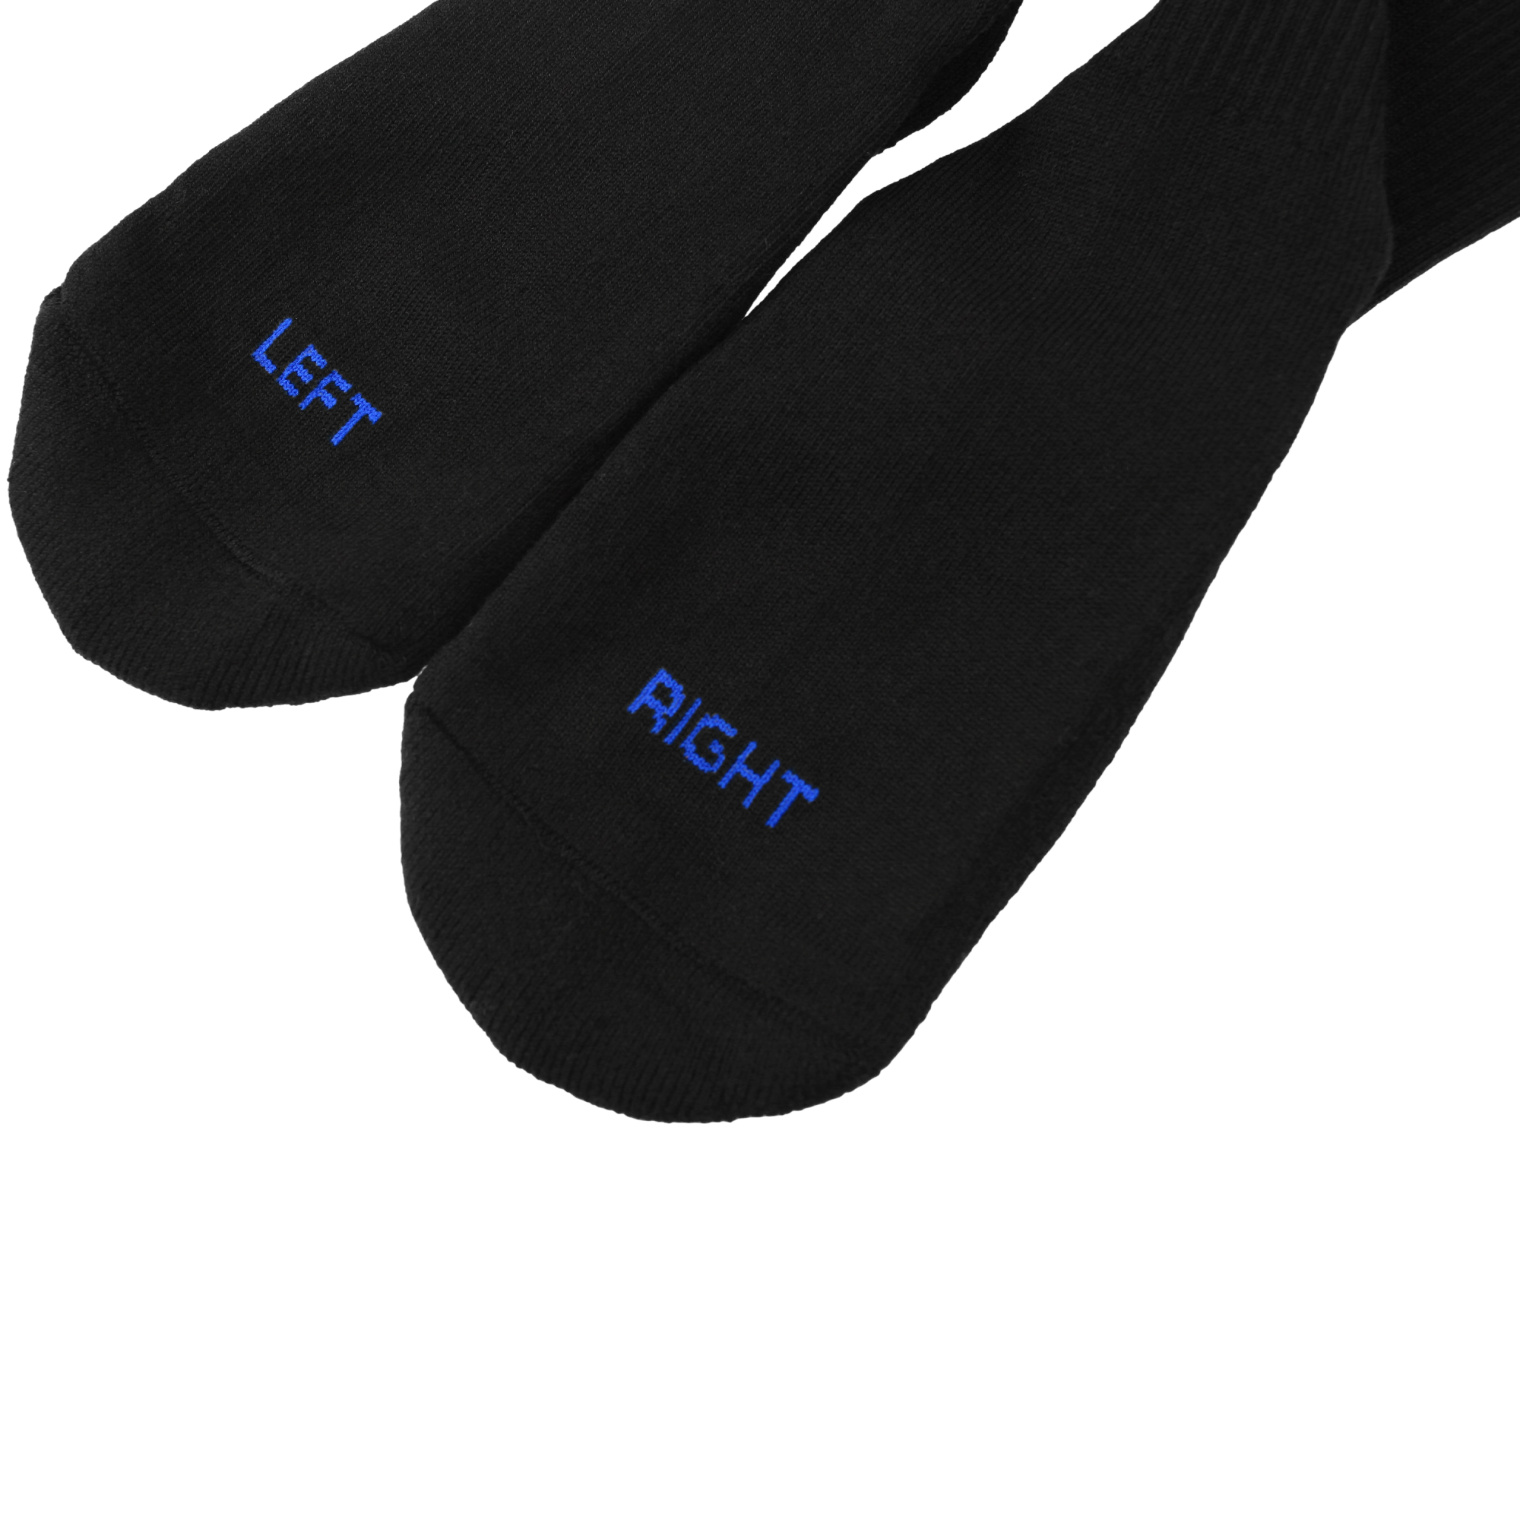 VETEMENTS Black socks with logo